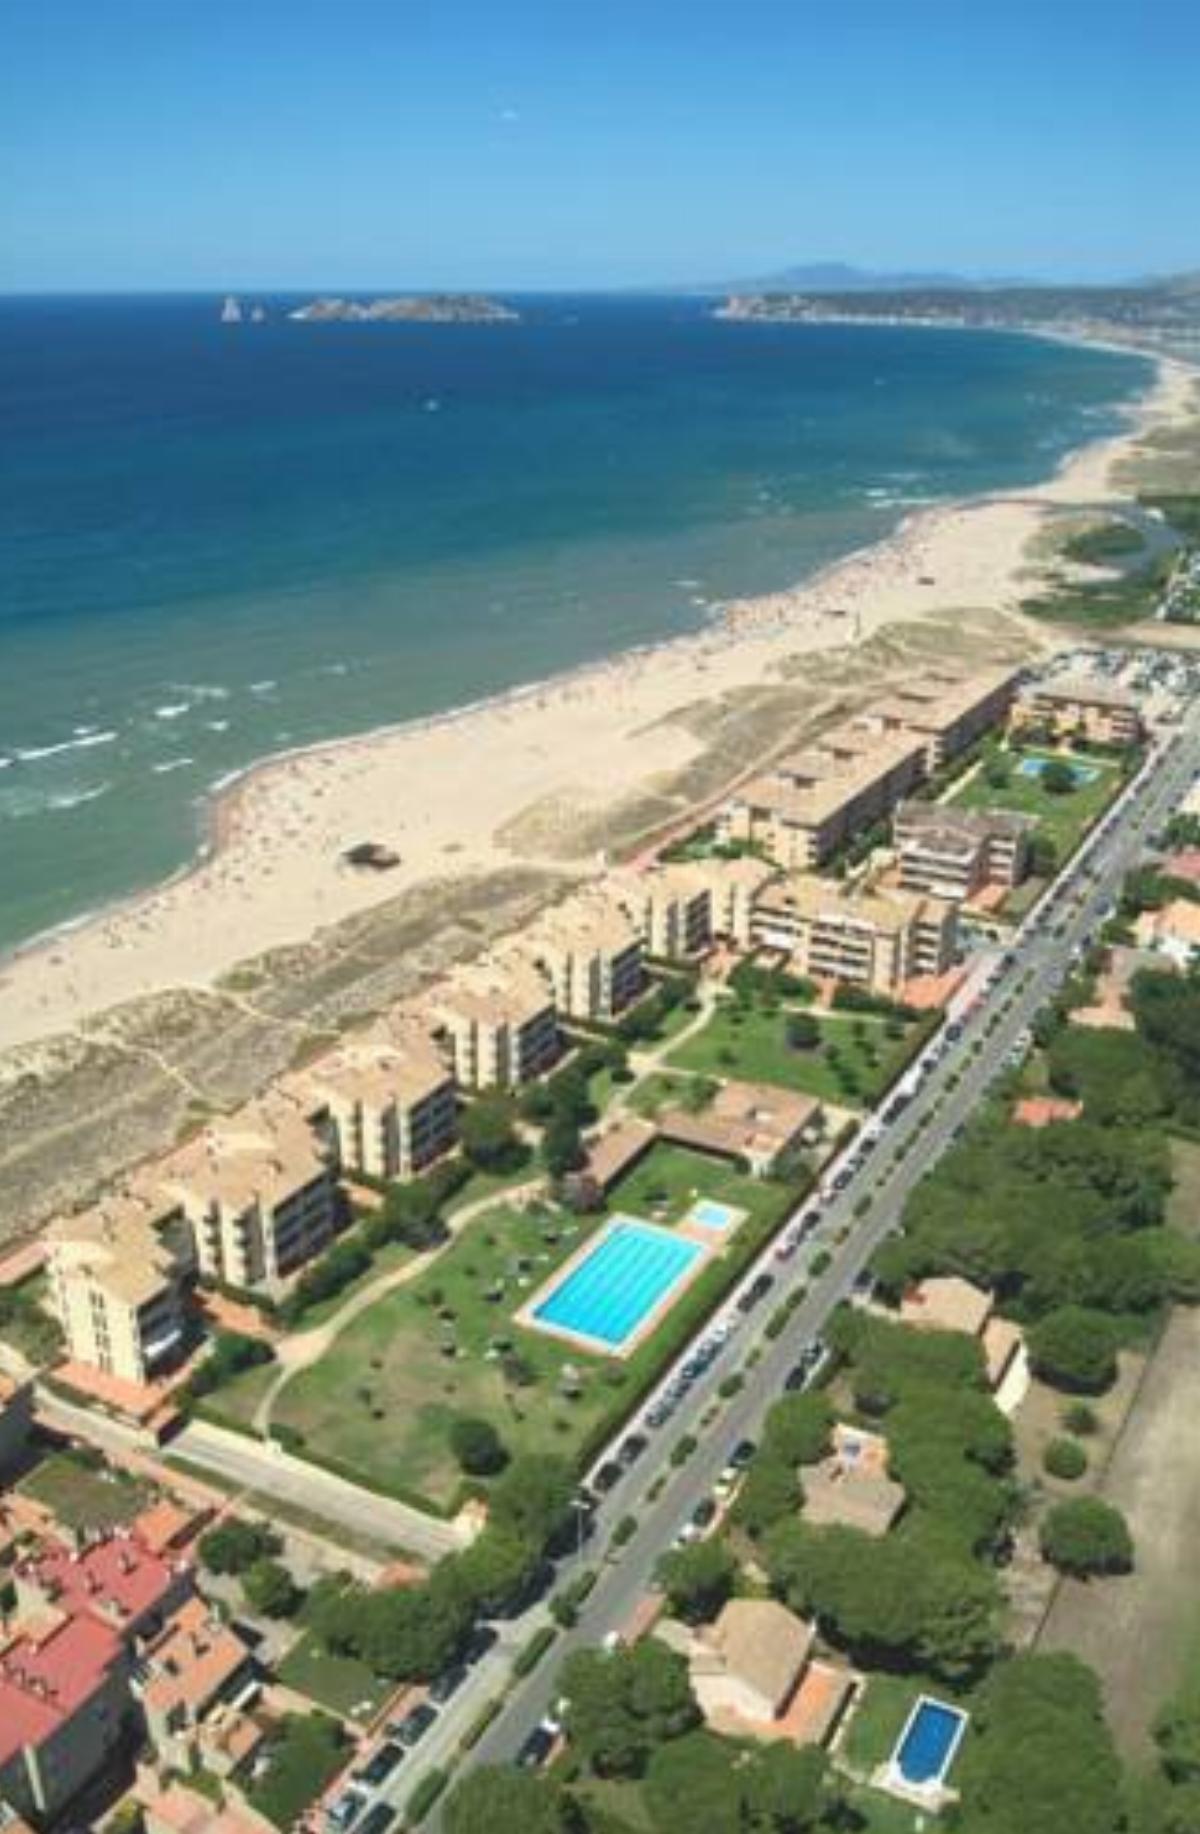 Apartaments Golf Mar Hotel Pals Spain